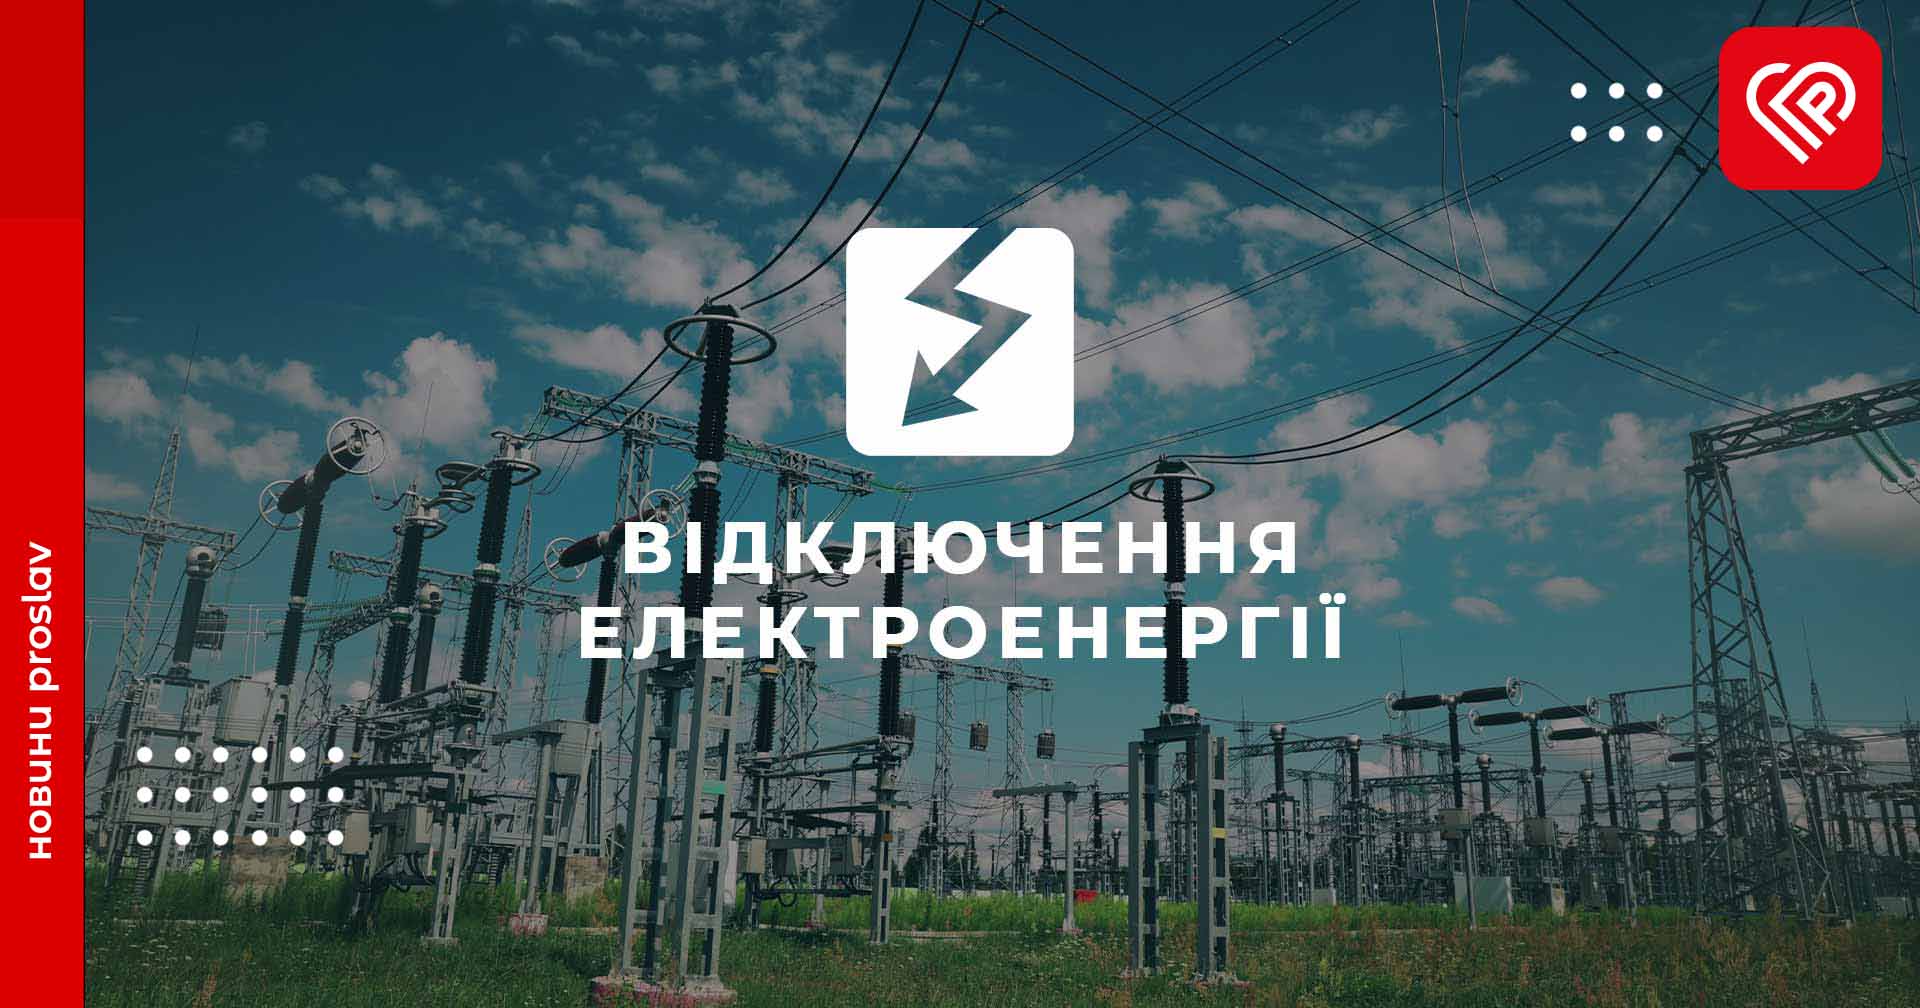 5 серпня на Переяславщині планово вимикатимуть світло: перелік вулиць та графік ДТЕК